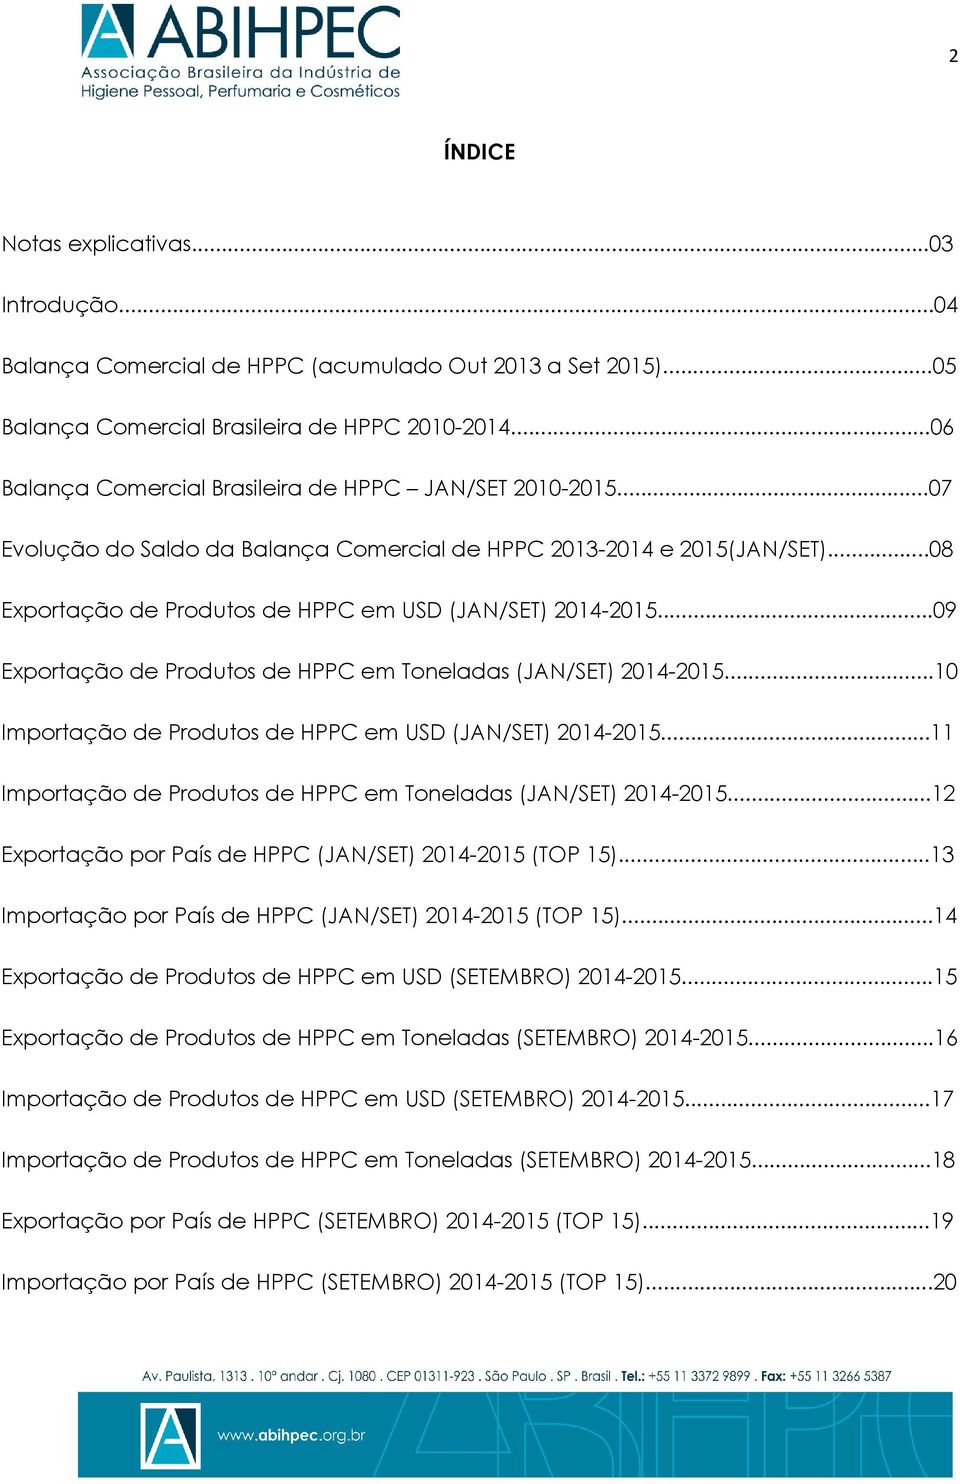 ..09 Exportação de Produtos de HPPC em Toneladas (JAN/SET) 2014-2015...10 Importação de Produtos de HPPC em USD (JAN/SET) 2014-2015...11 Importação de Produtos de HPPC em Toneladas (JAN/SET) 2014-2015.